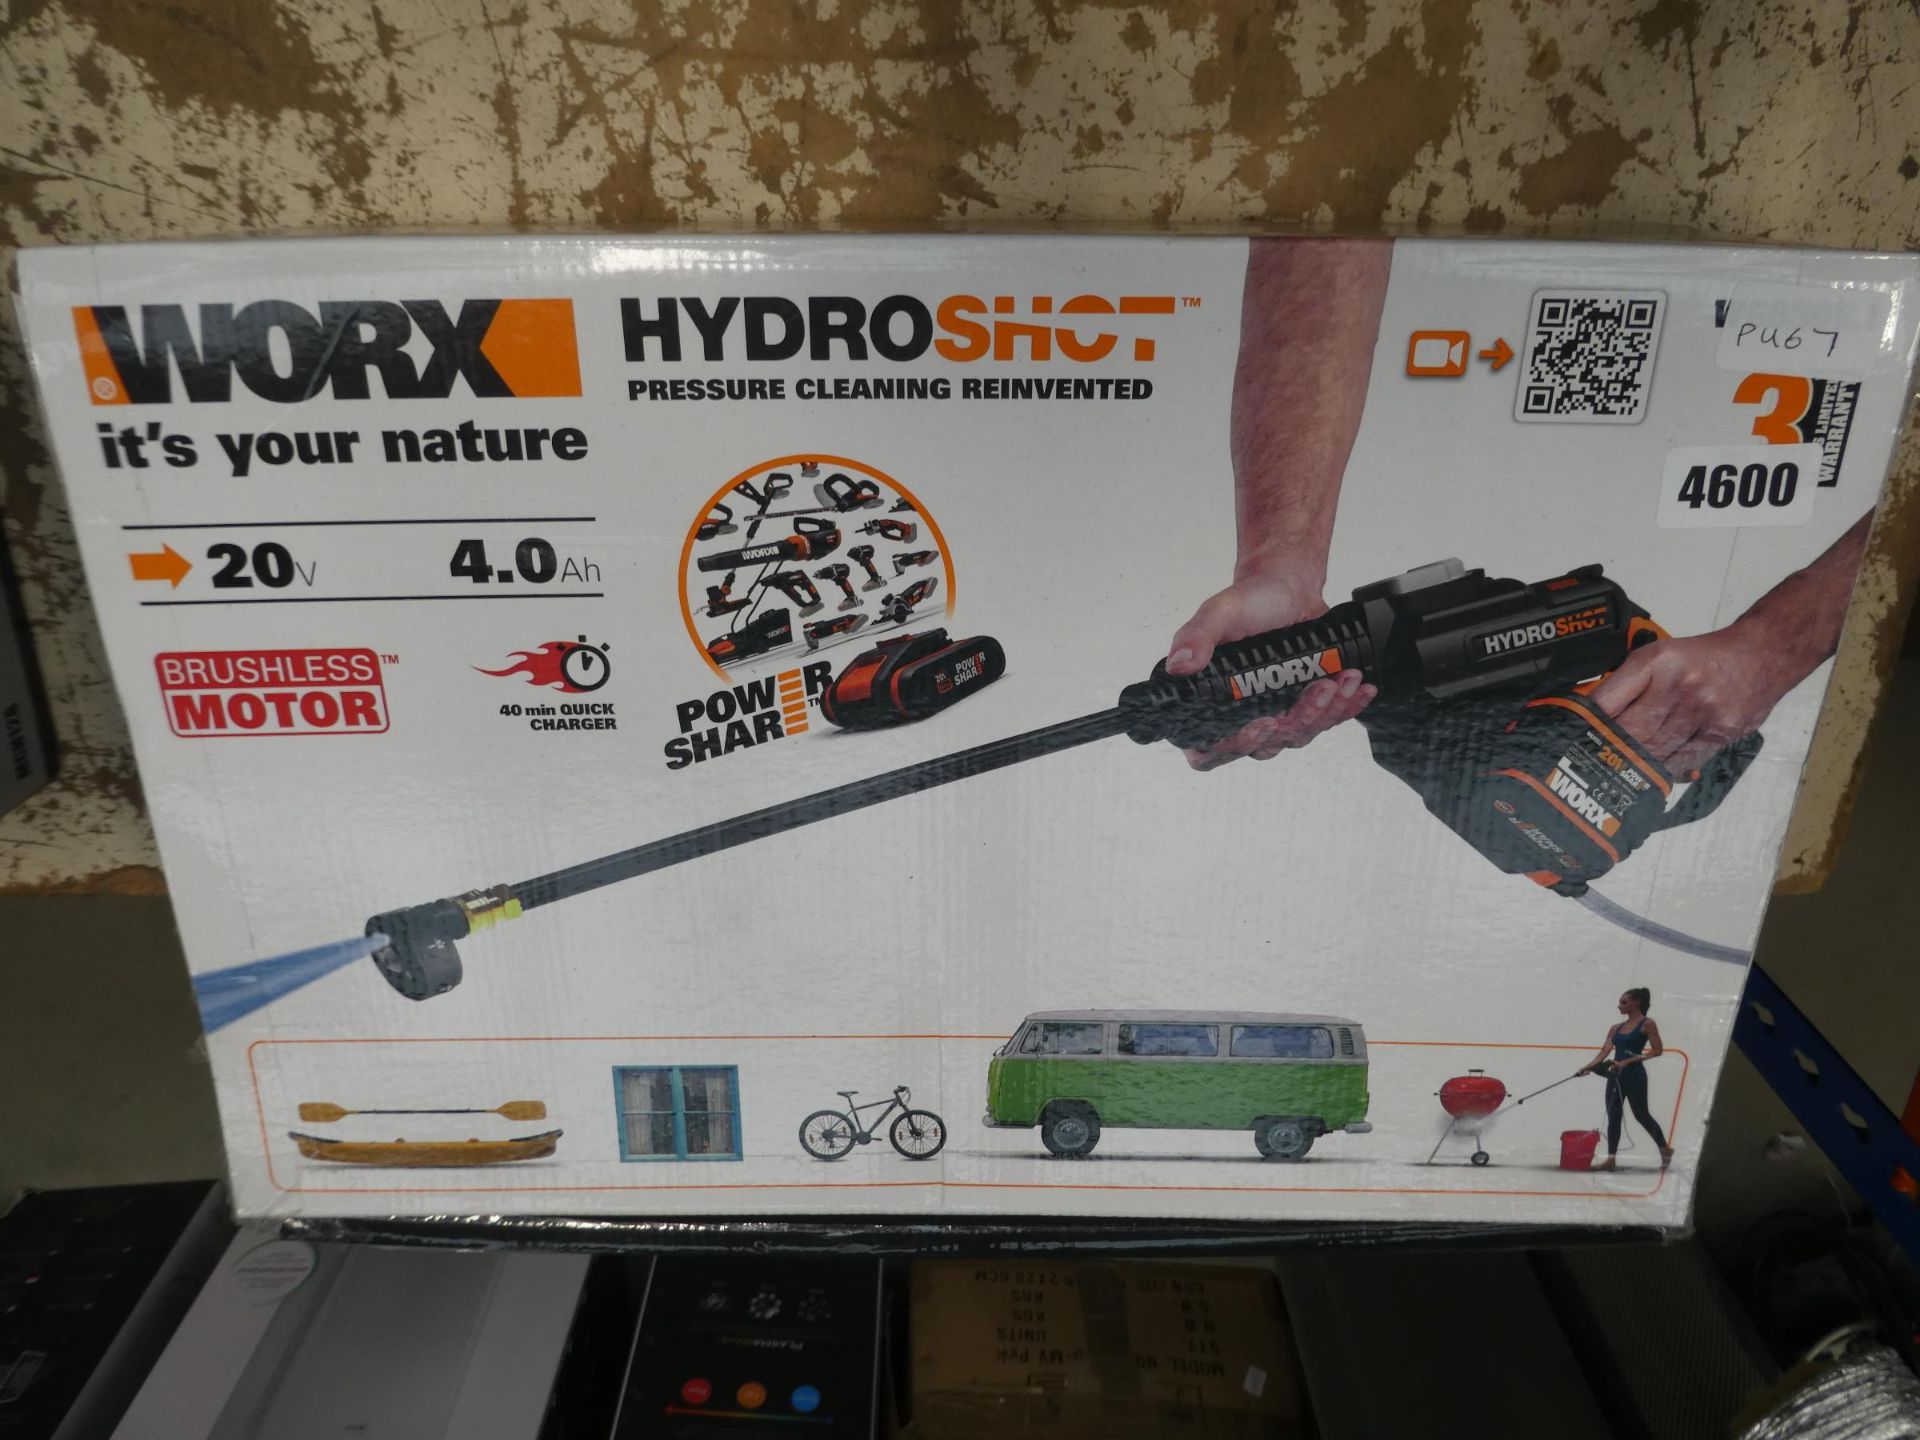 Worxs Hydroshot hose gun